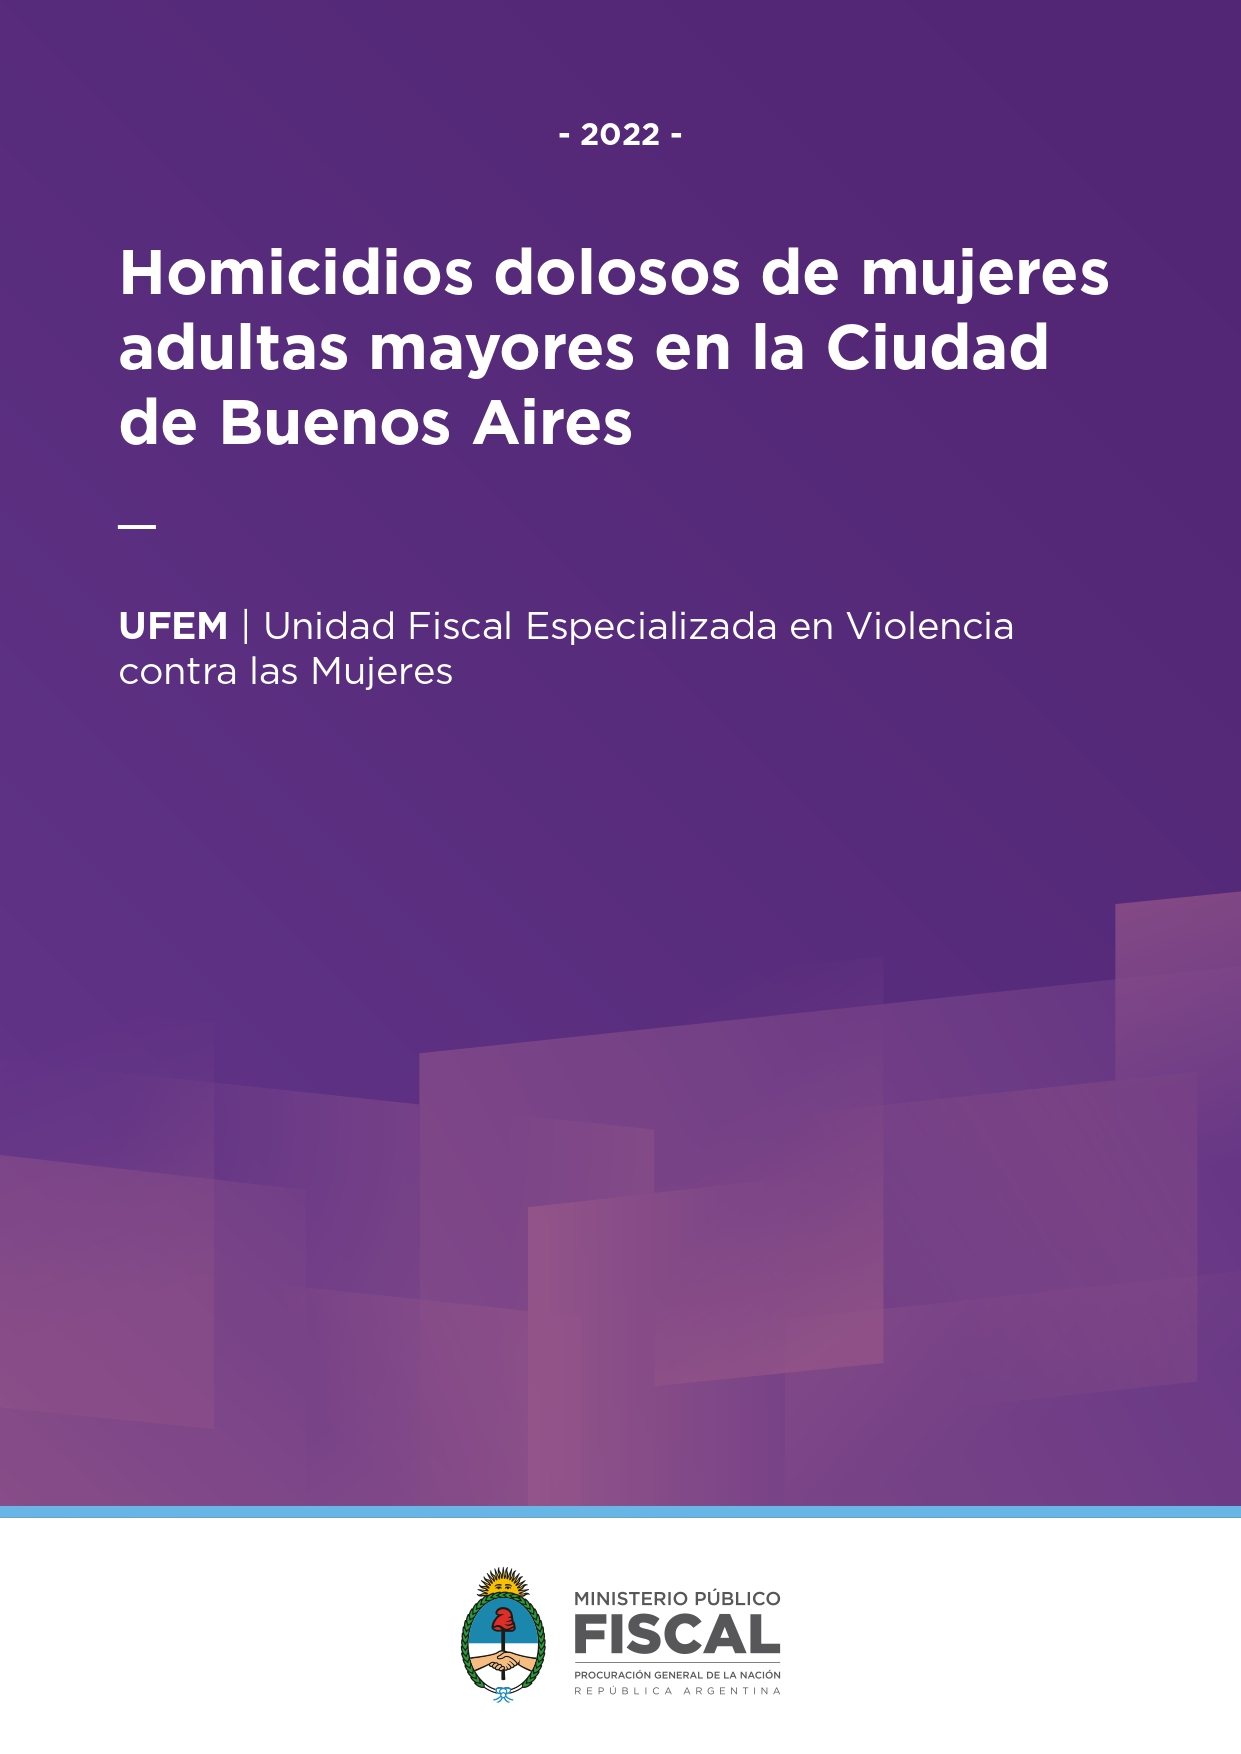 Homicidios dolosos de mujeres adultas mayores en la Ciudad de Buenos Aires